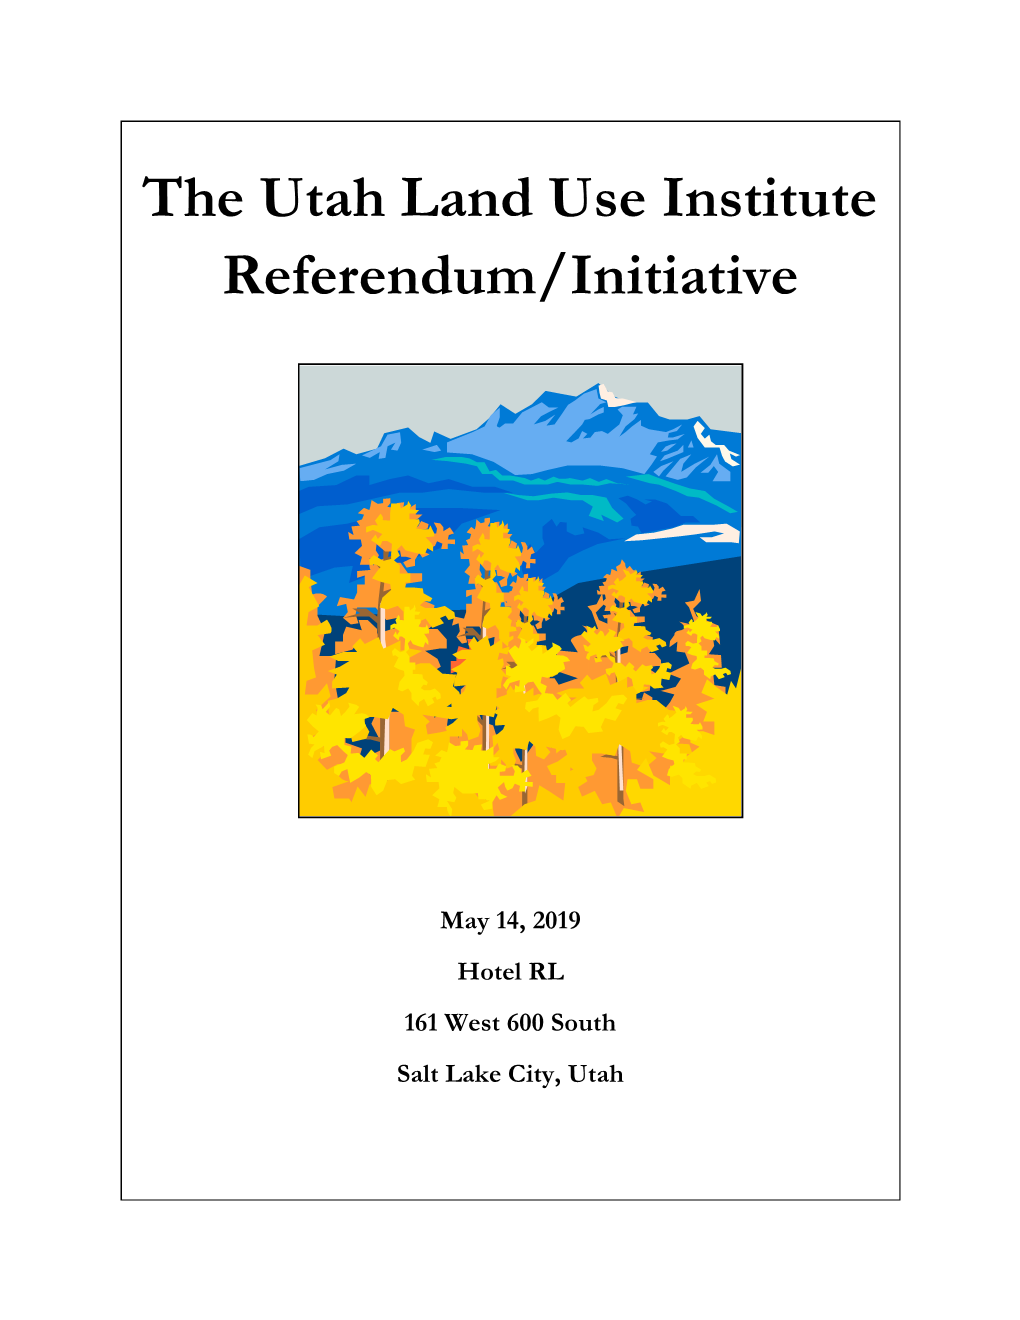 The Utah Land Use Institute Referendum/Initiative